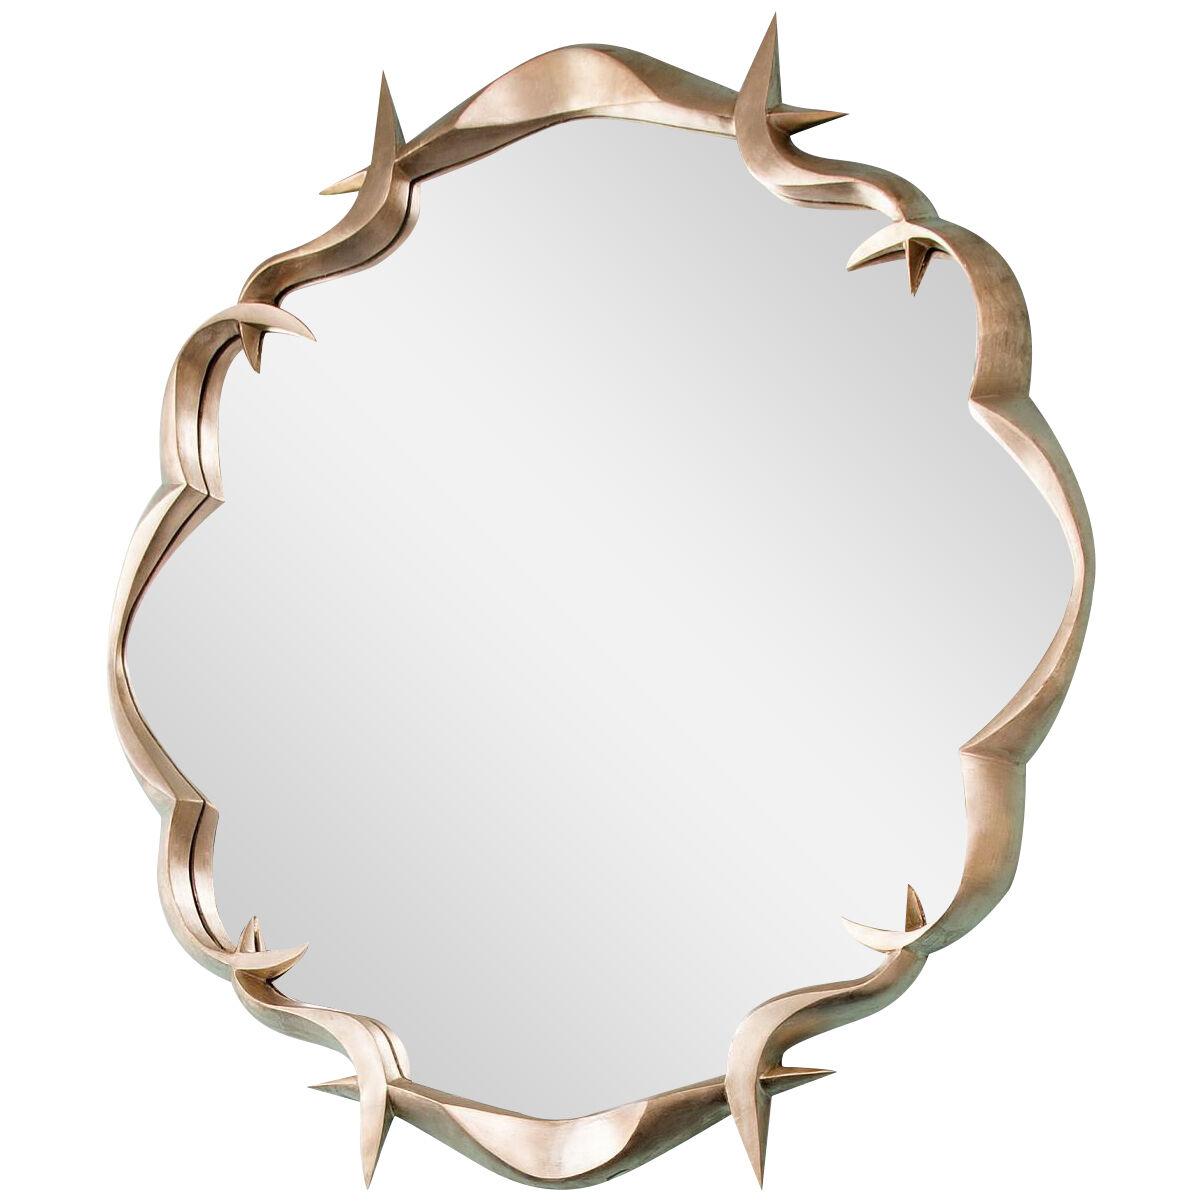 Gold leafed Round Mirror